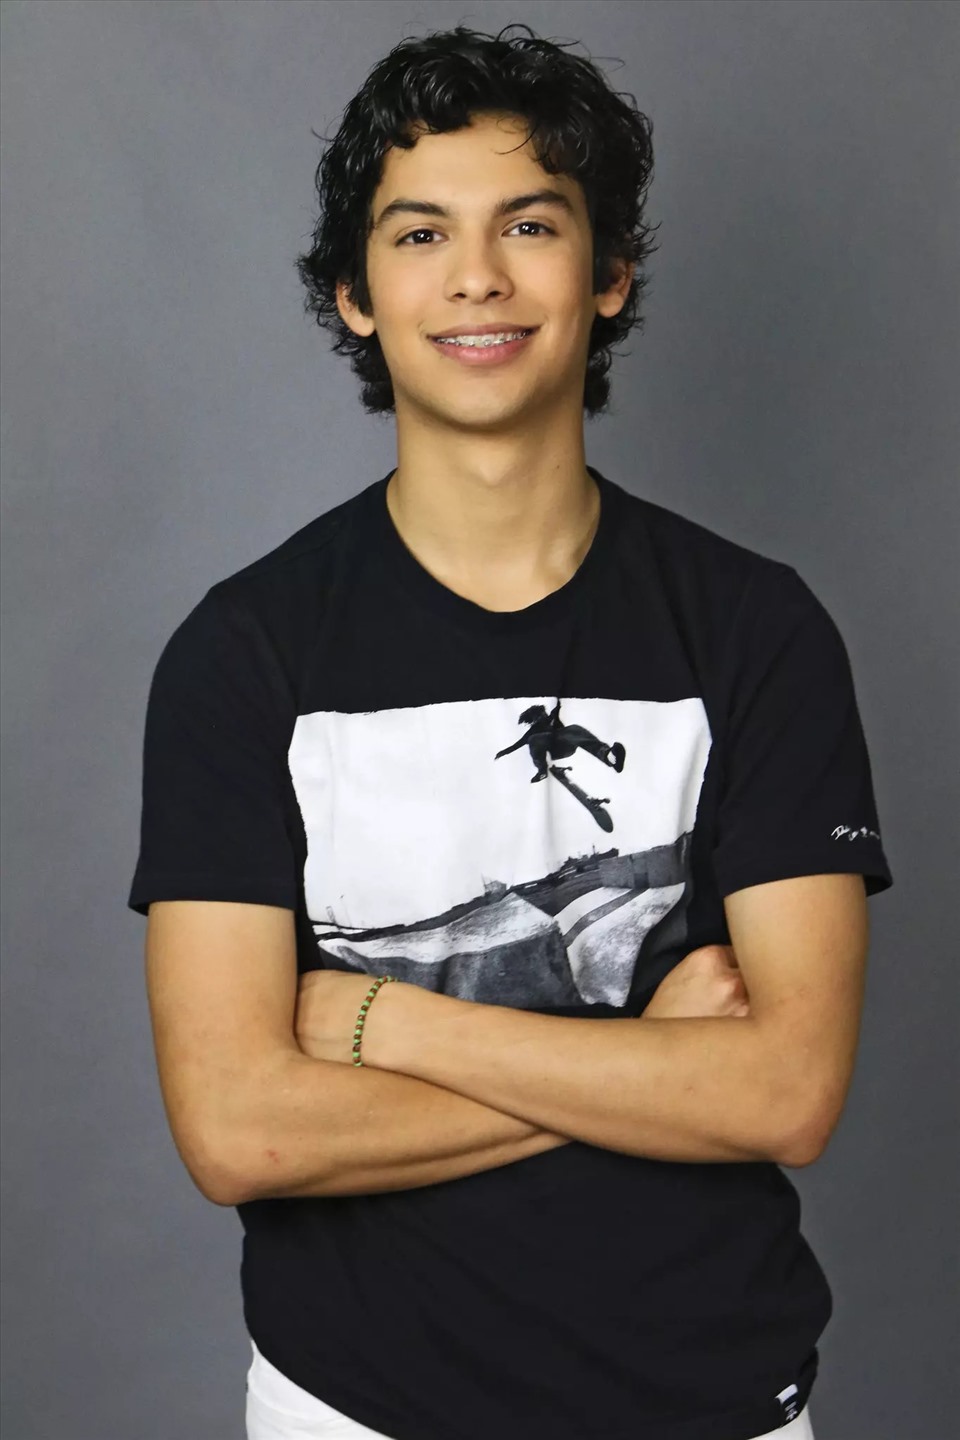 Xolo Maridueña là gương mặt nam diễn viên trẻ nhận được nhiều sự chú ý trong thời gian gần đây. Ảnh: Xinhua